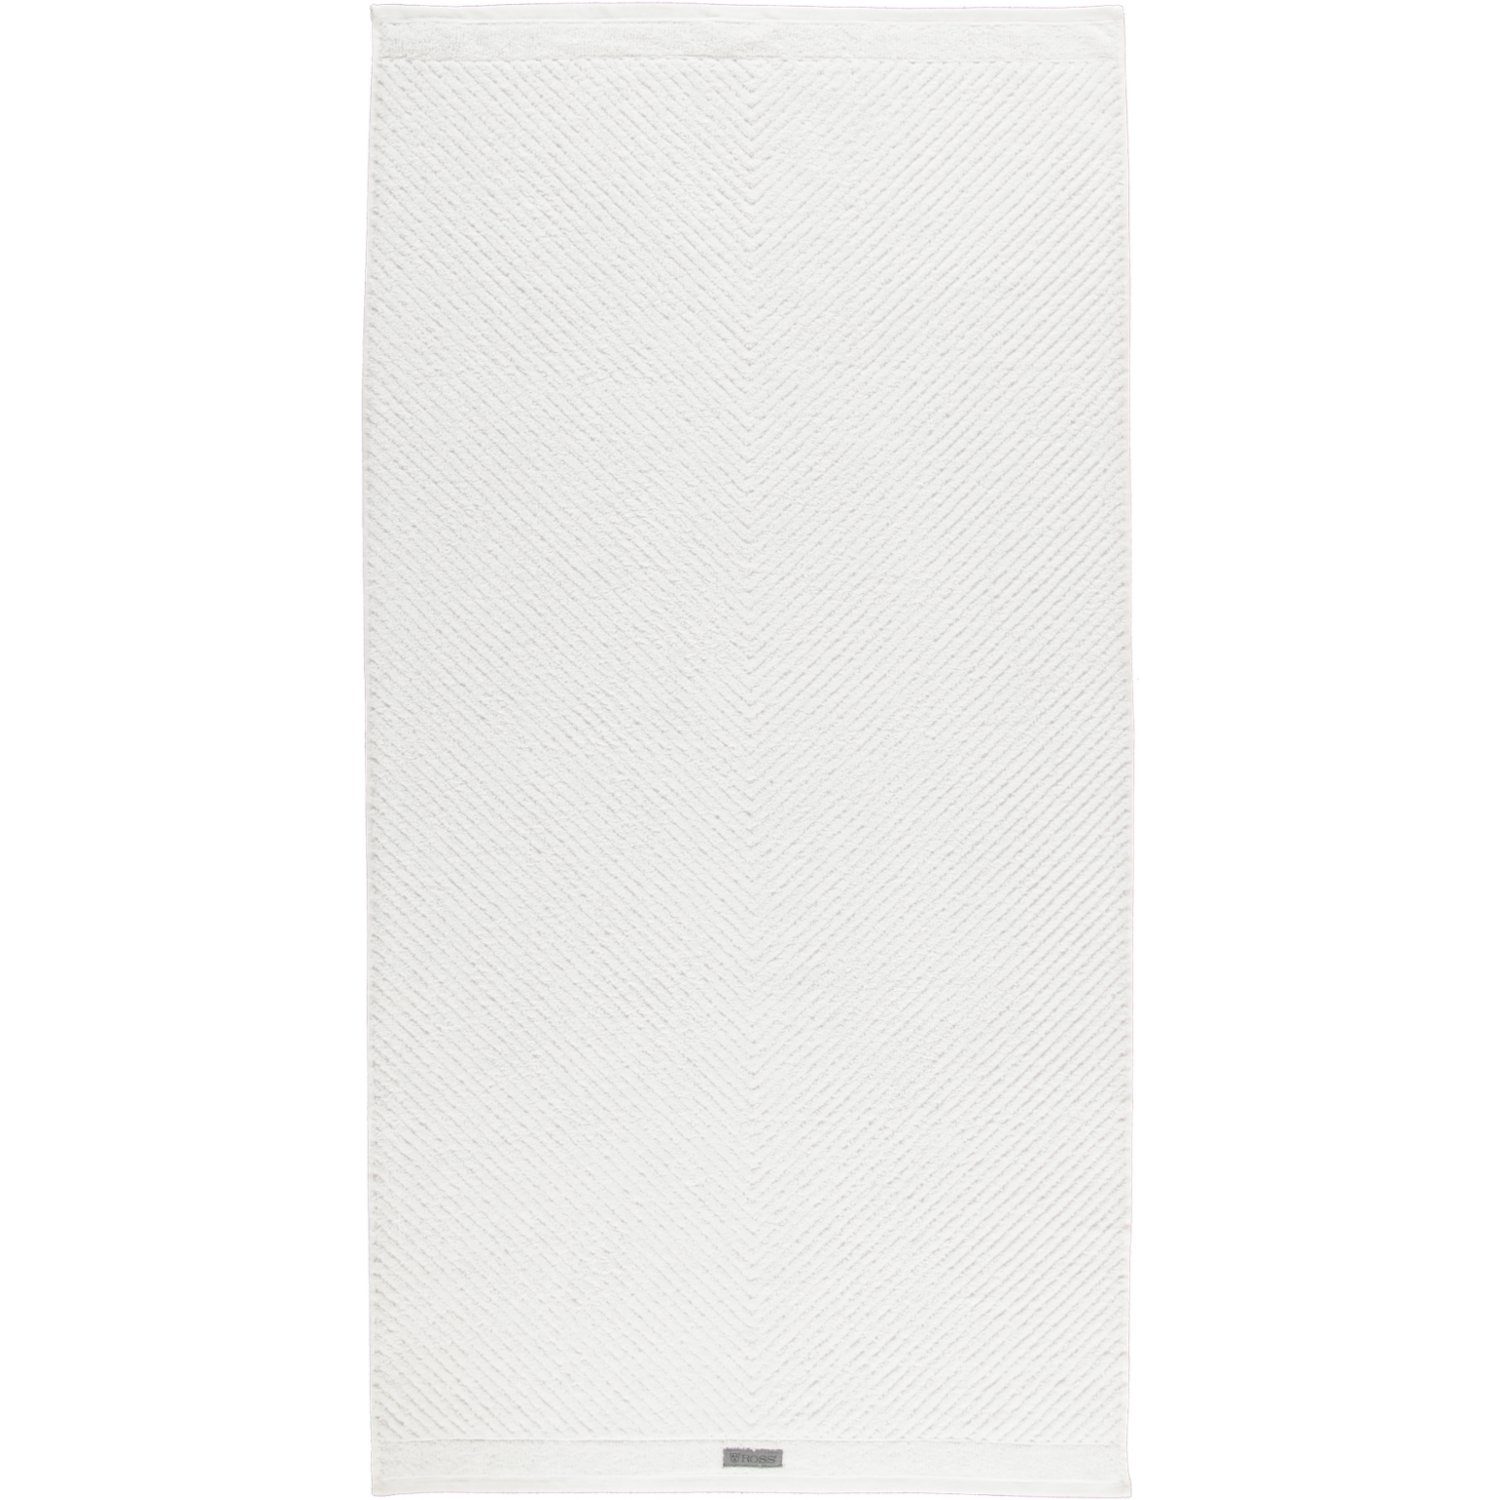 ROSS Handtücher Smart 4006, 100% Baumwolle weiß - 00